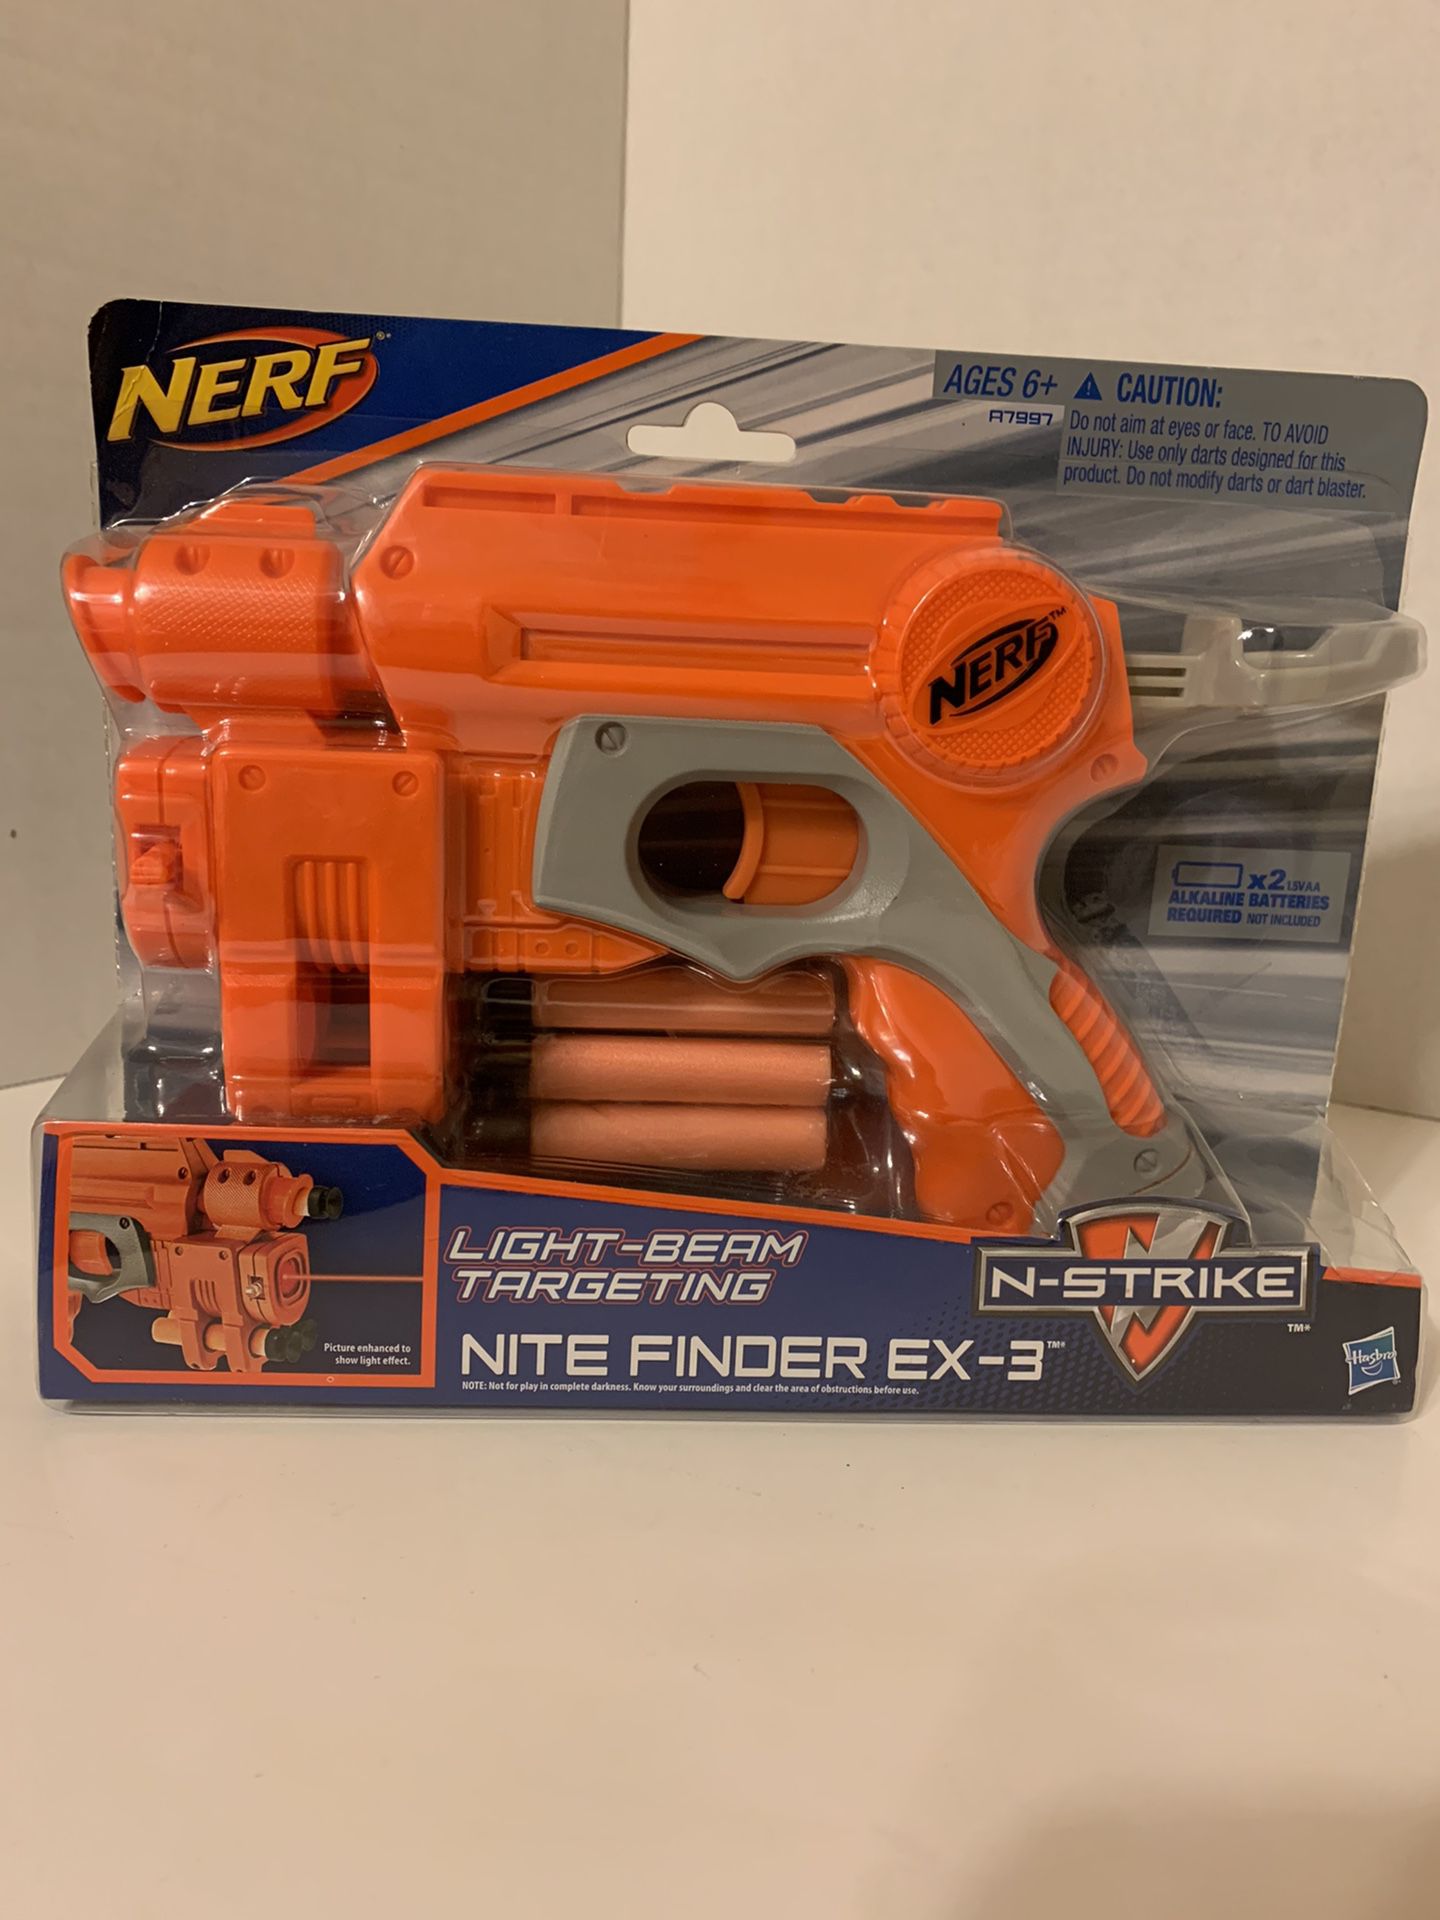 Nerf night finder EX-3 laser gun